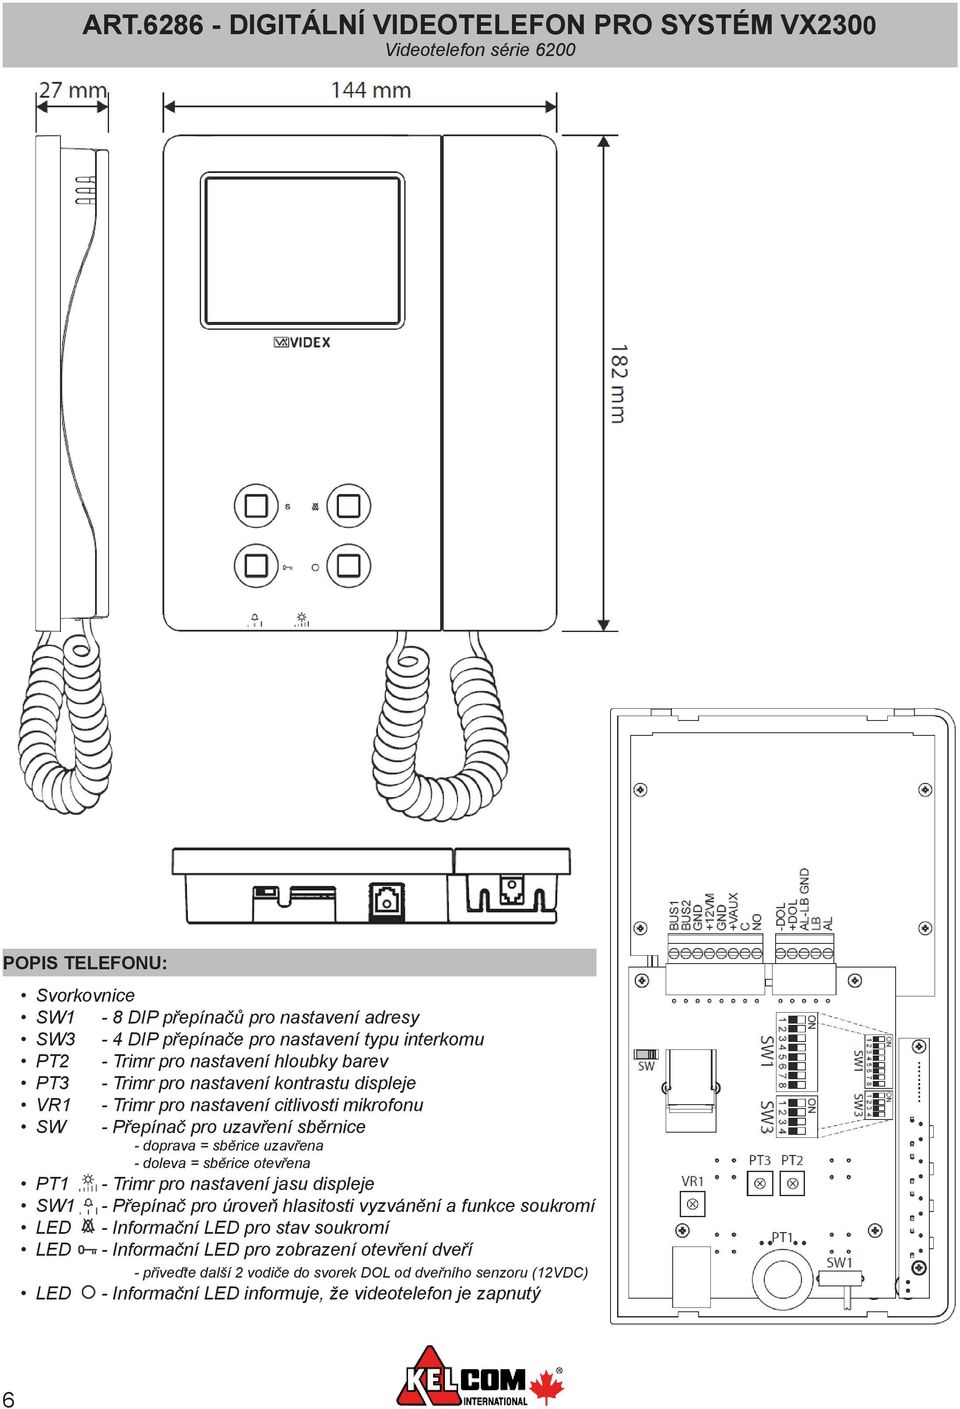 doprava = sběrice uzavřena - doleva = sběrice otevřena PT1 - Trimr pro nastavení jasu displeje SW1 - Přepínač pro úroveň hlasitosti vyzvánění a funkce soukromí LED - Informační LED pro